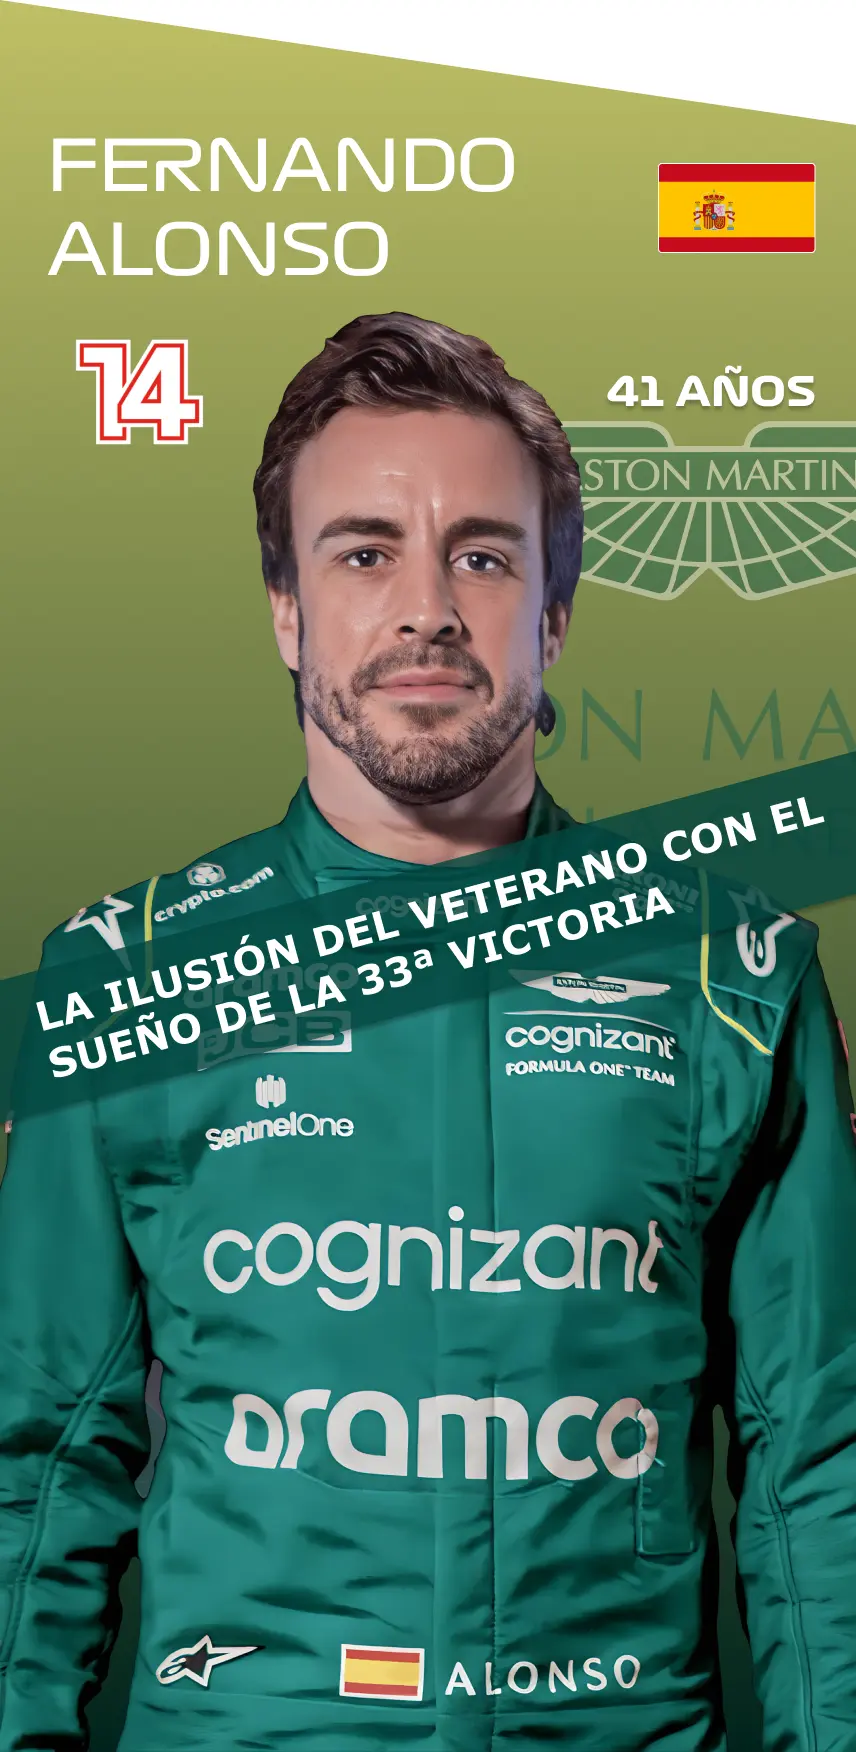 Fernando Alonso: La ilusión del veterano con el sueño de la 33ª victoria